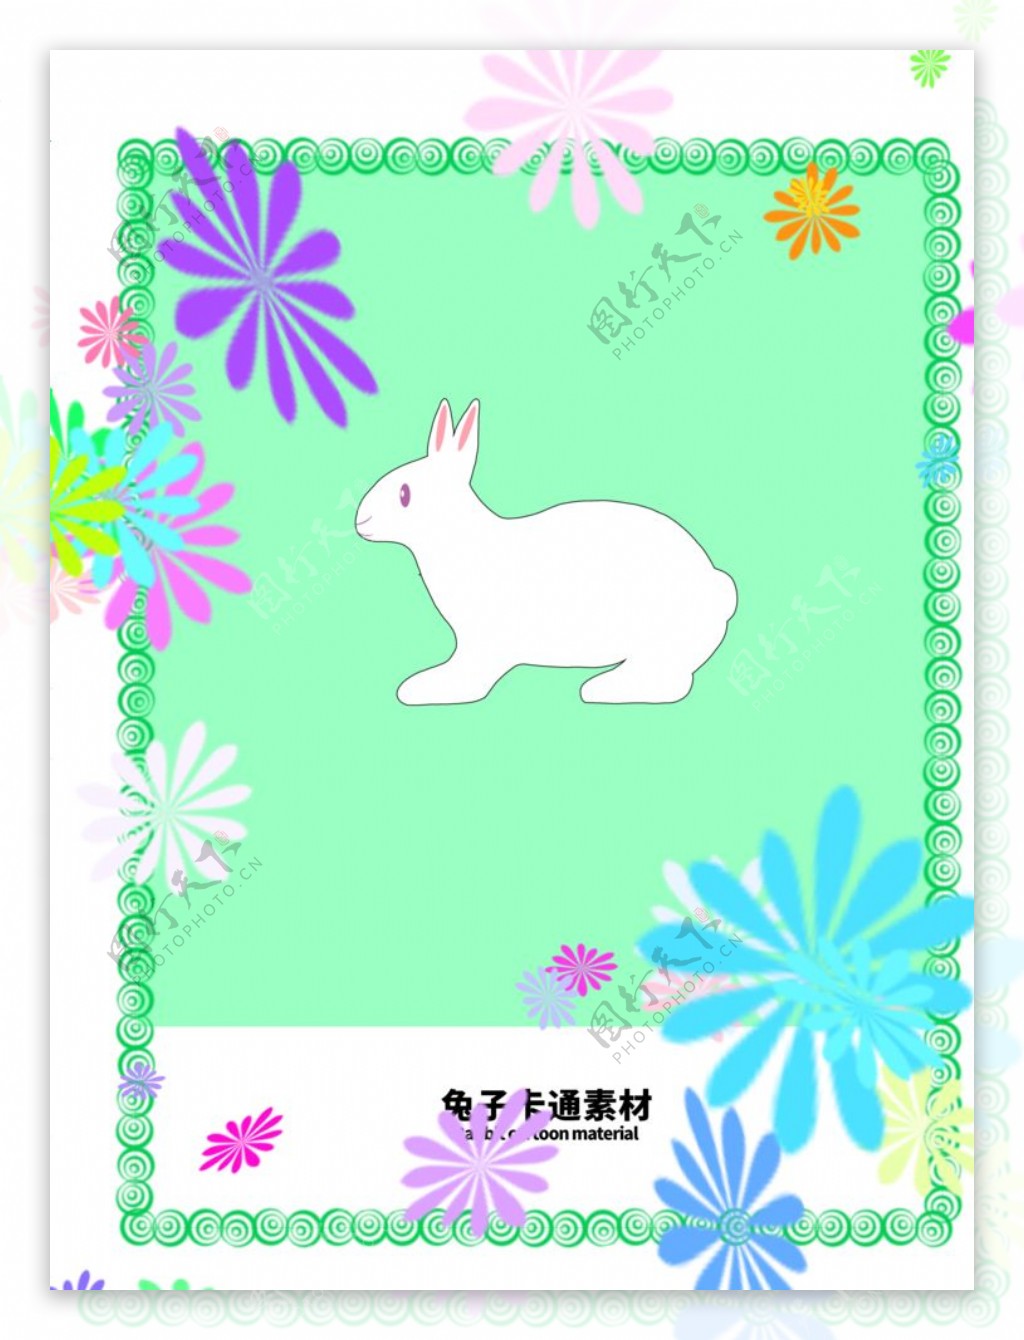 分层边框绿色分栏兔子卡通图片